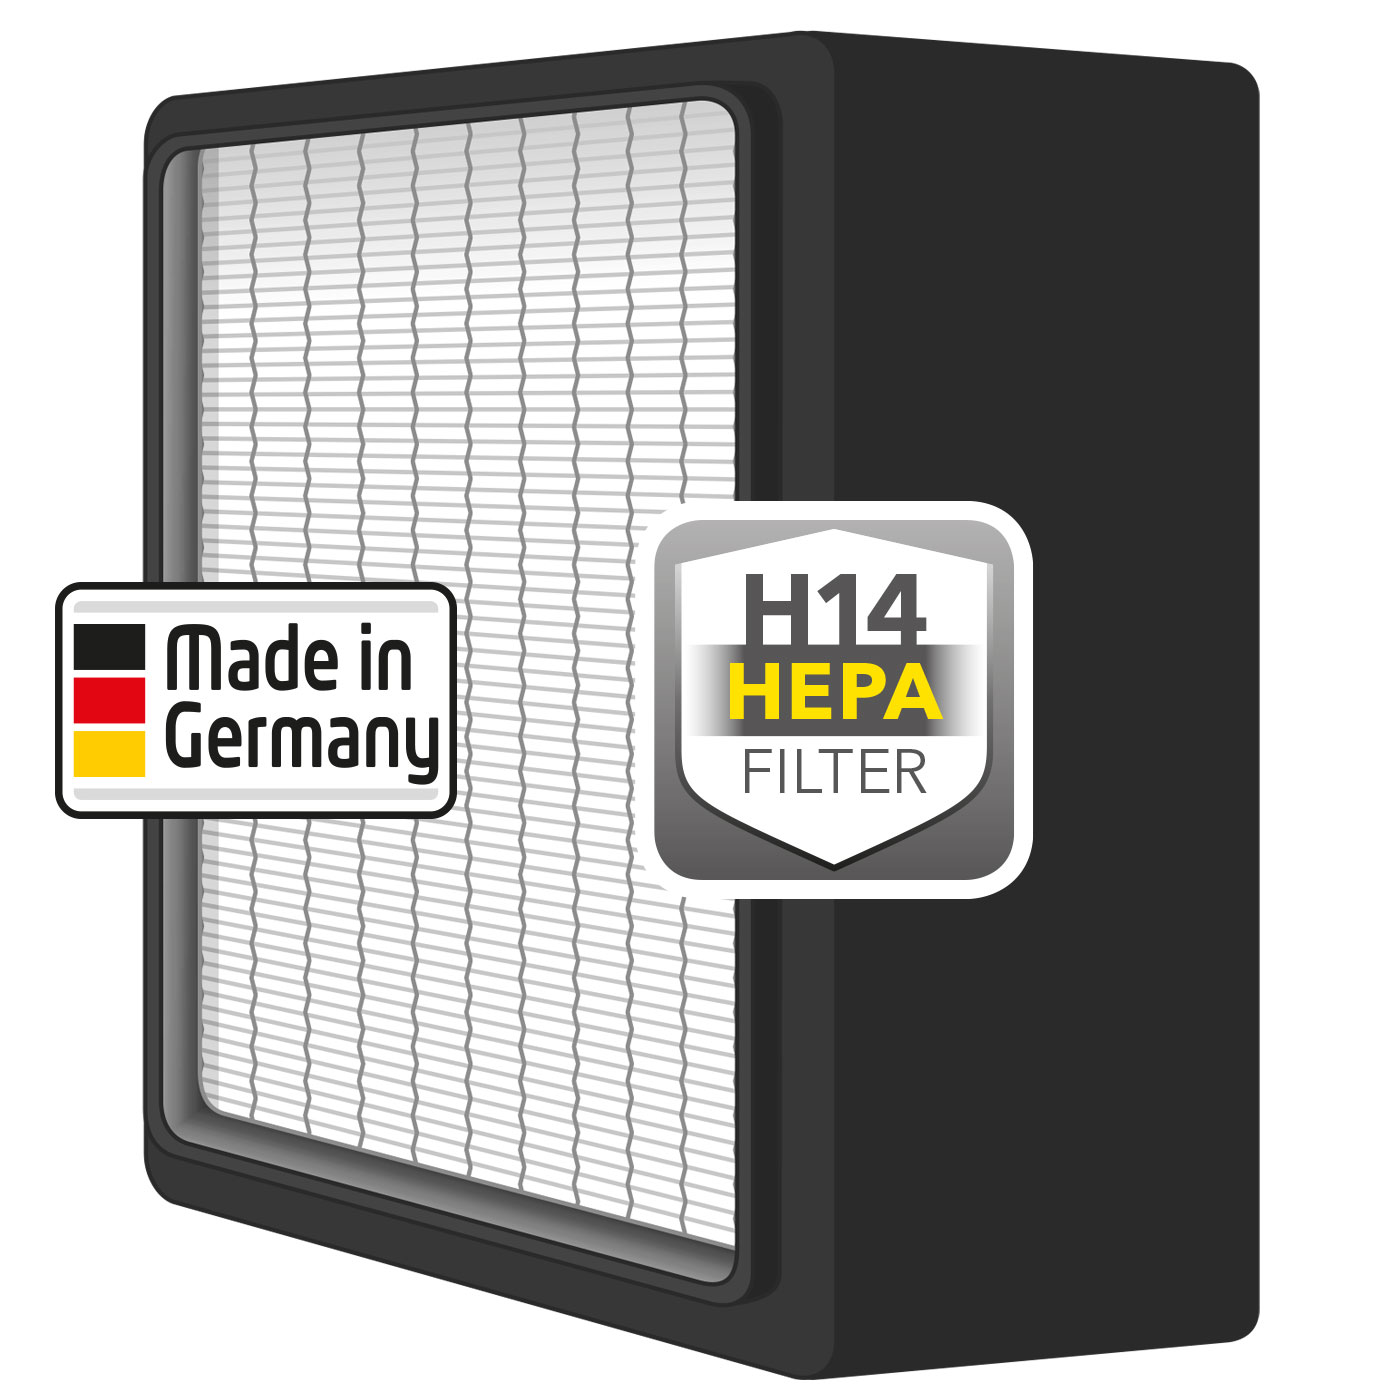 H14-HEPA-Filter (EN 1822)